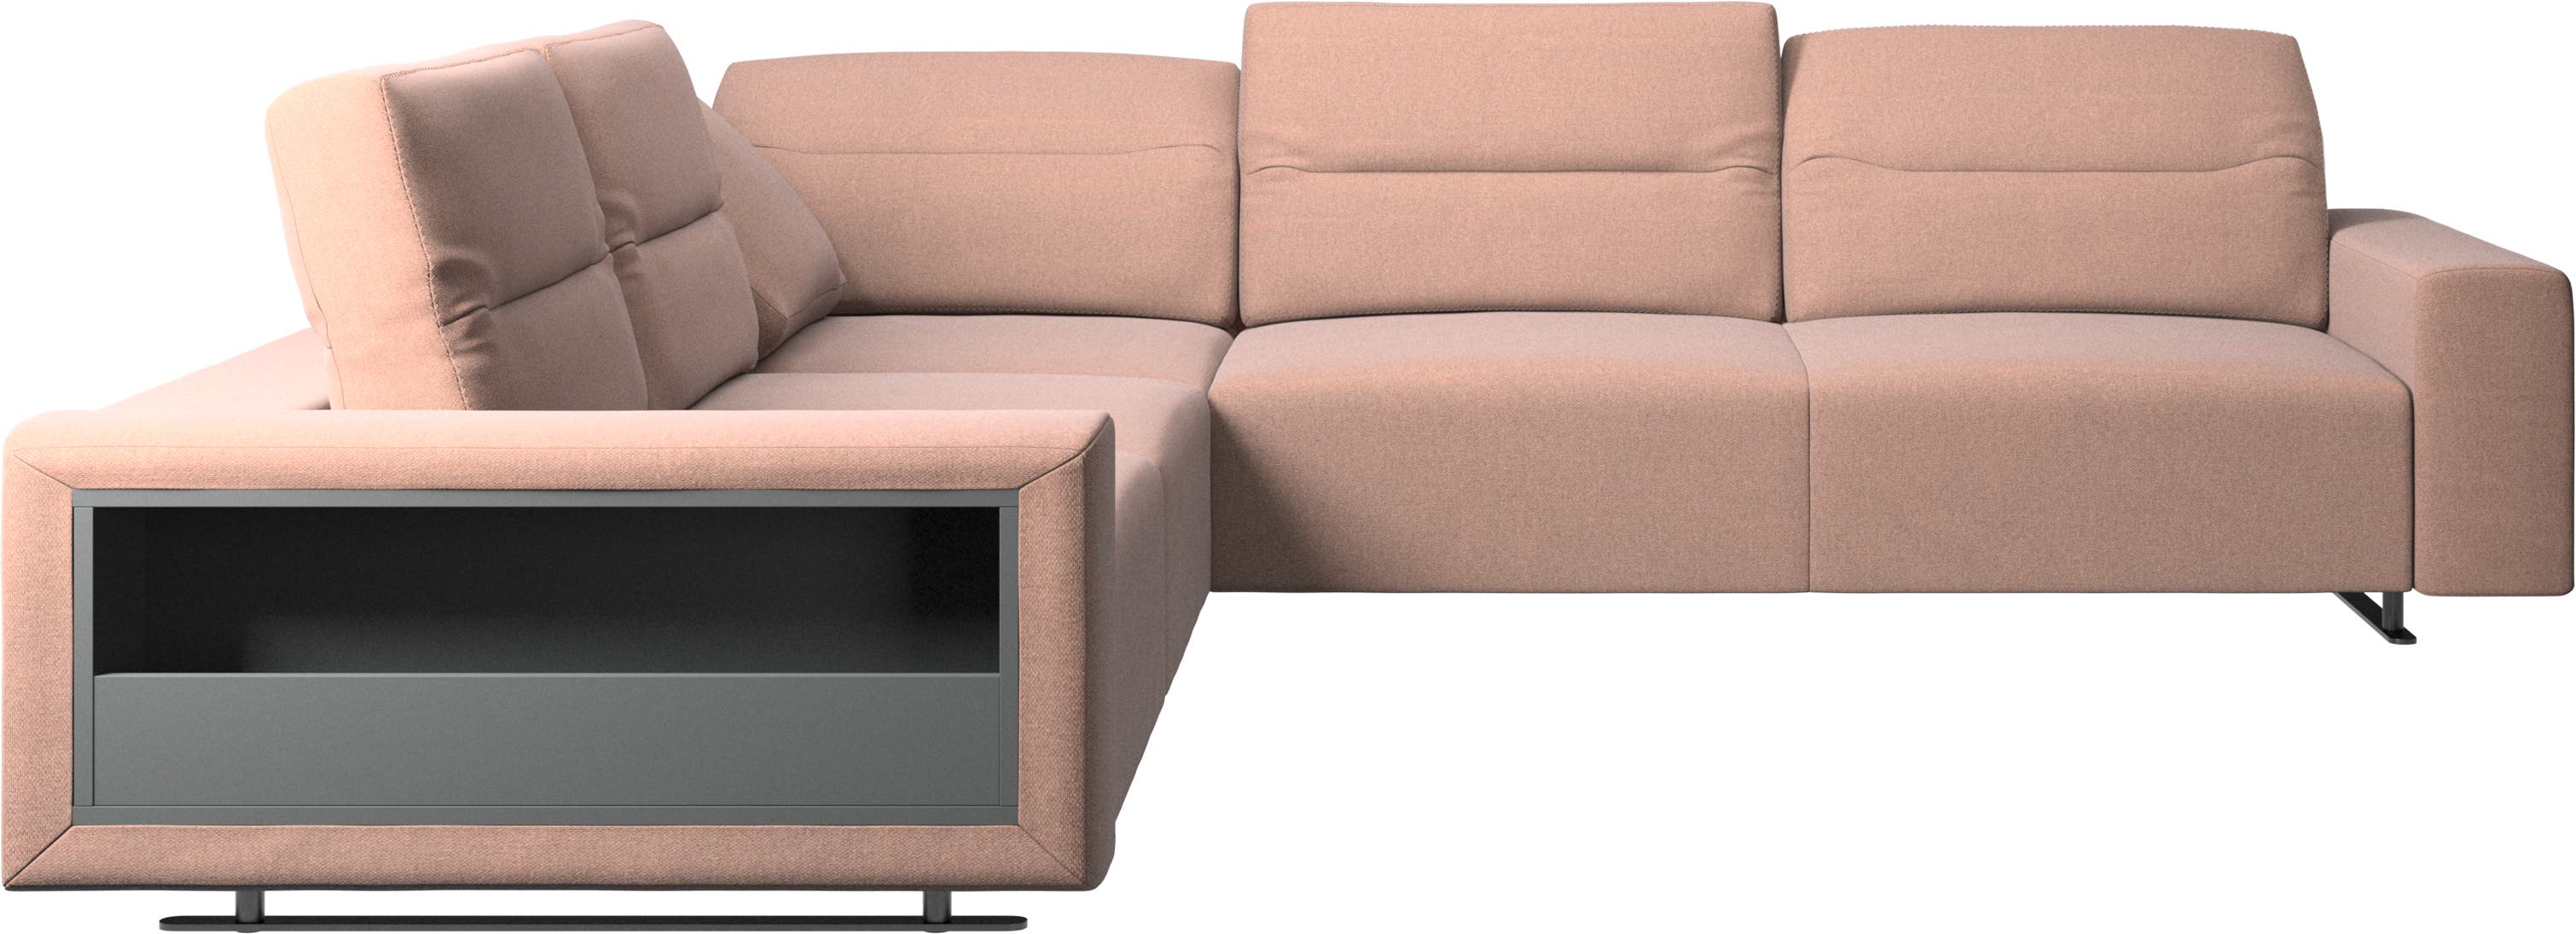 Γωνιακός καναπές Hampton με ρυθμιζόμενη πλάτη και αποθηκευτικό χώρο στην αριστερή πλευρά